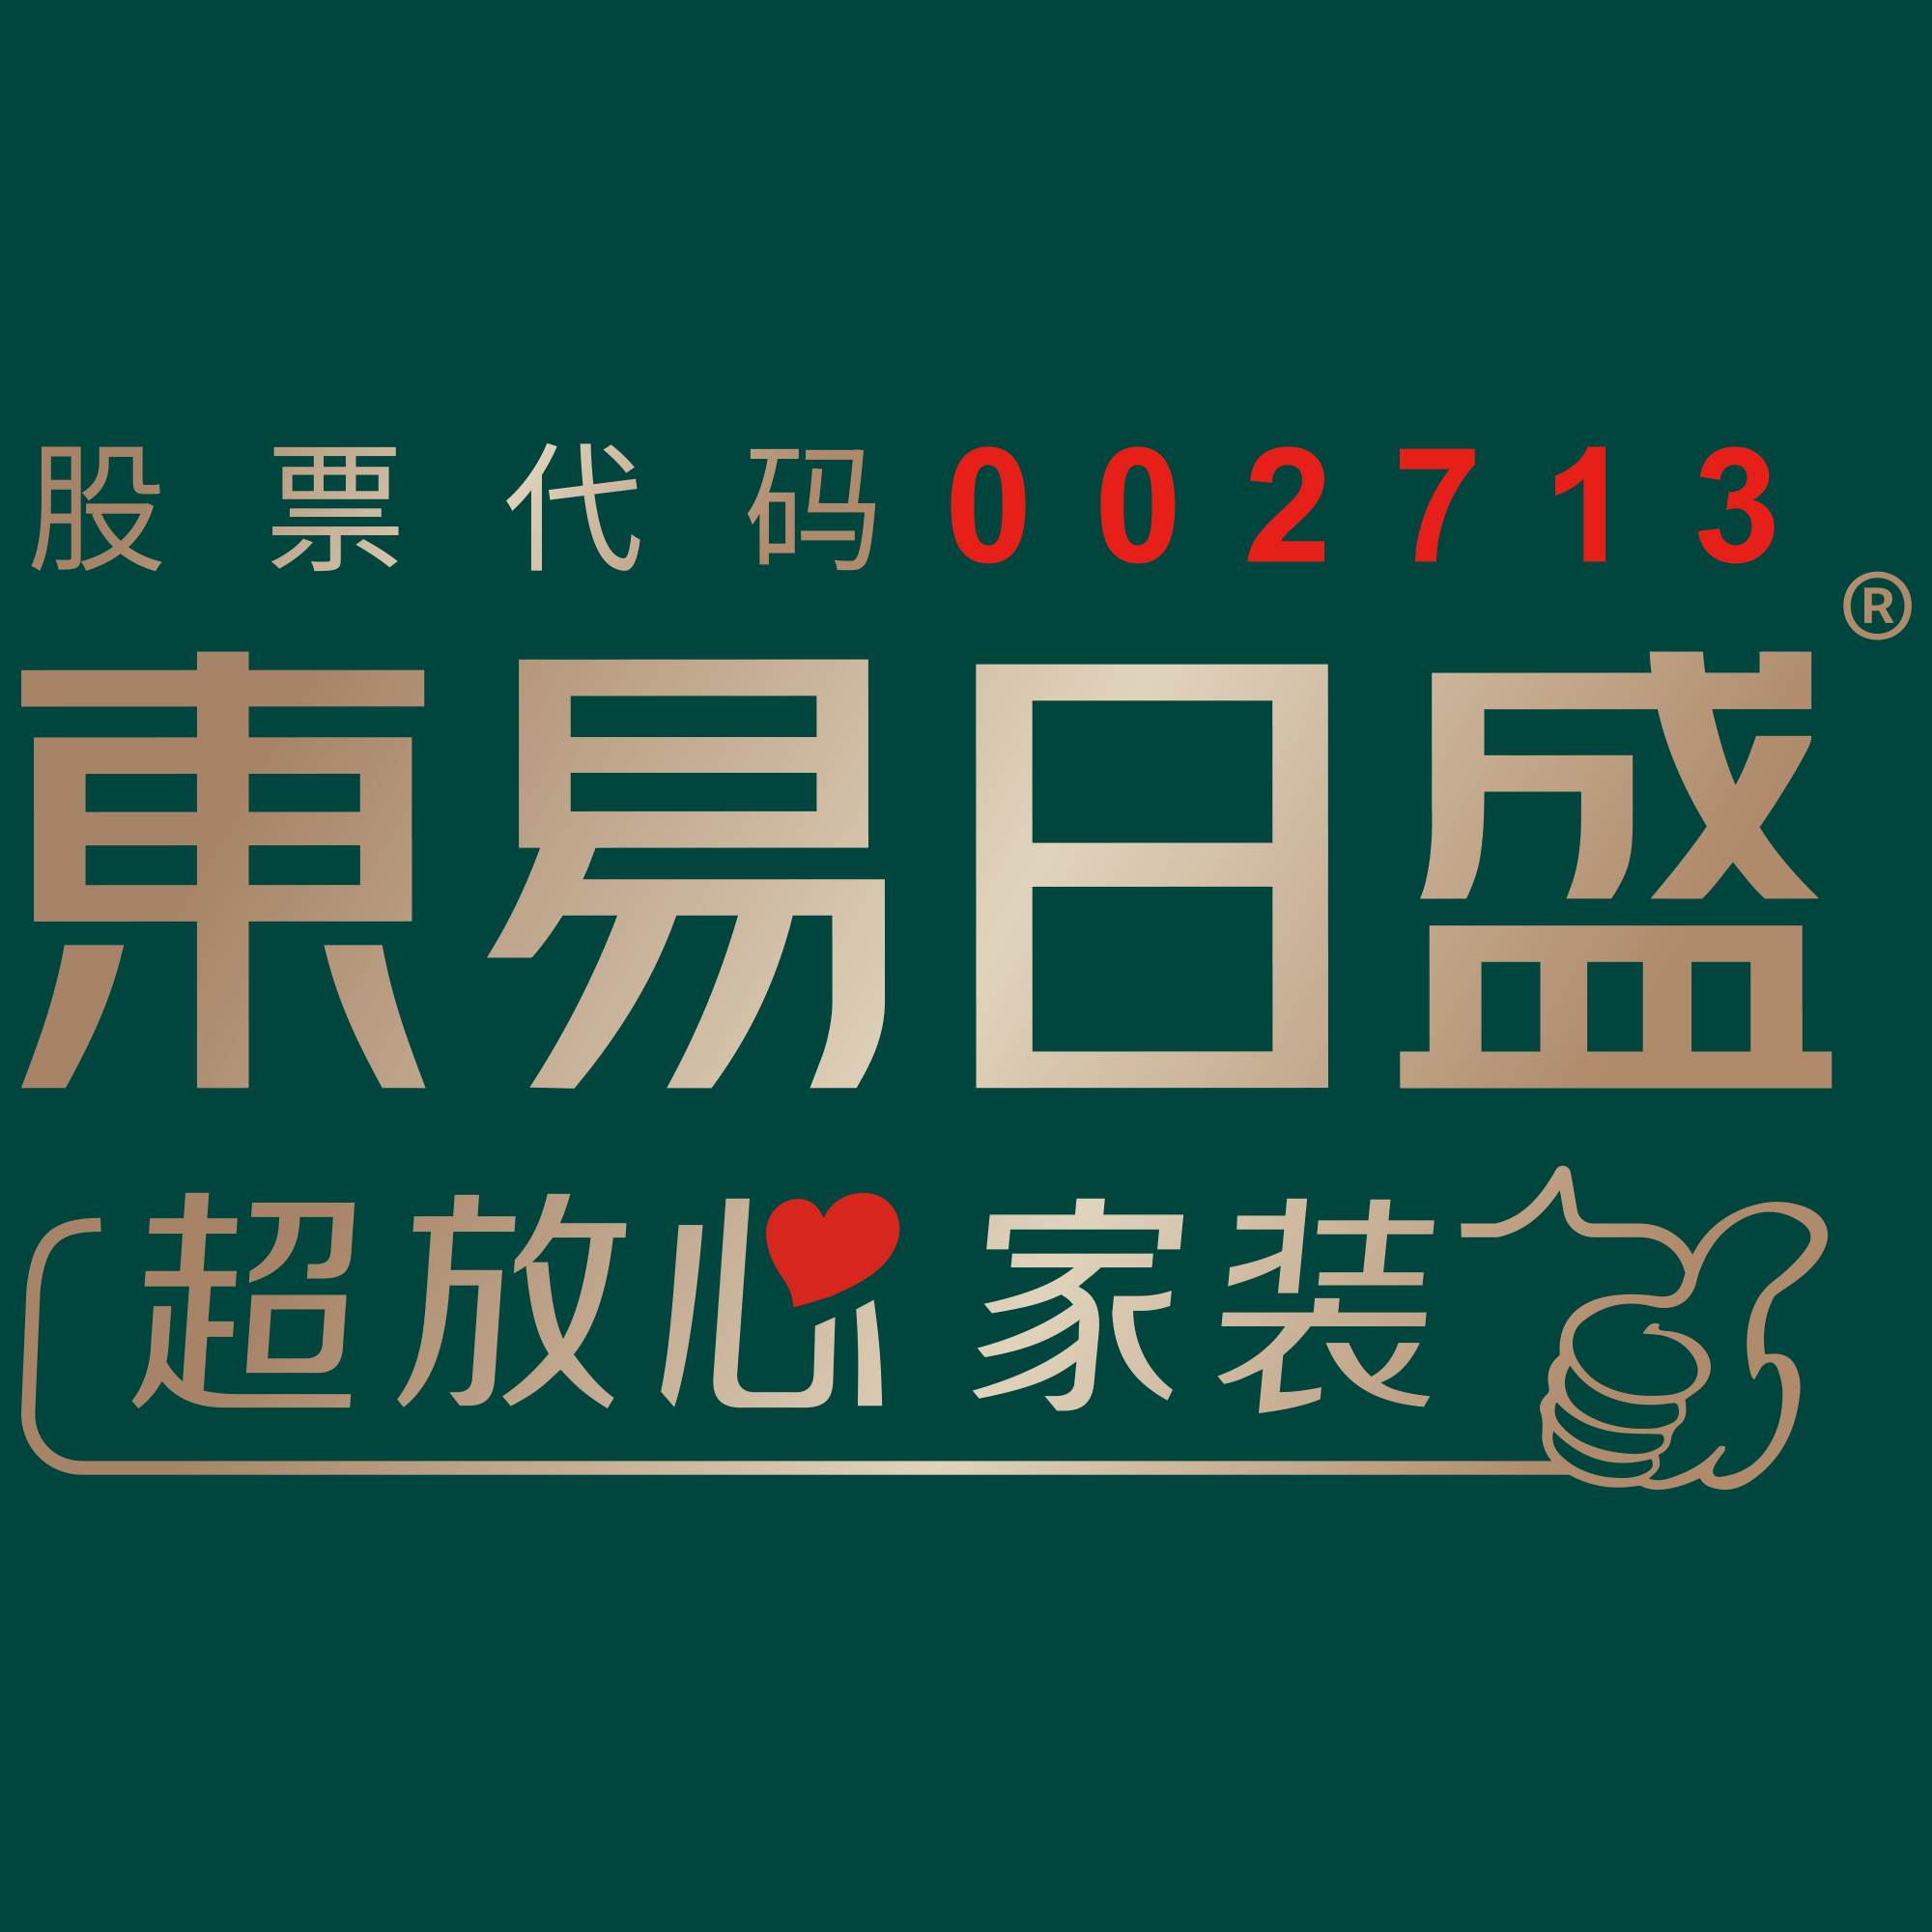 东易日盛装饰公司logo图片